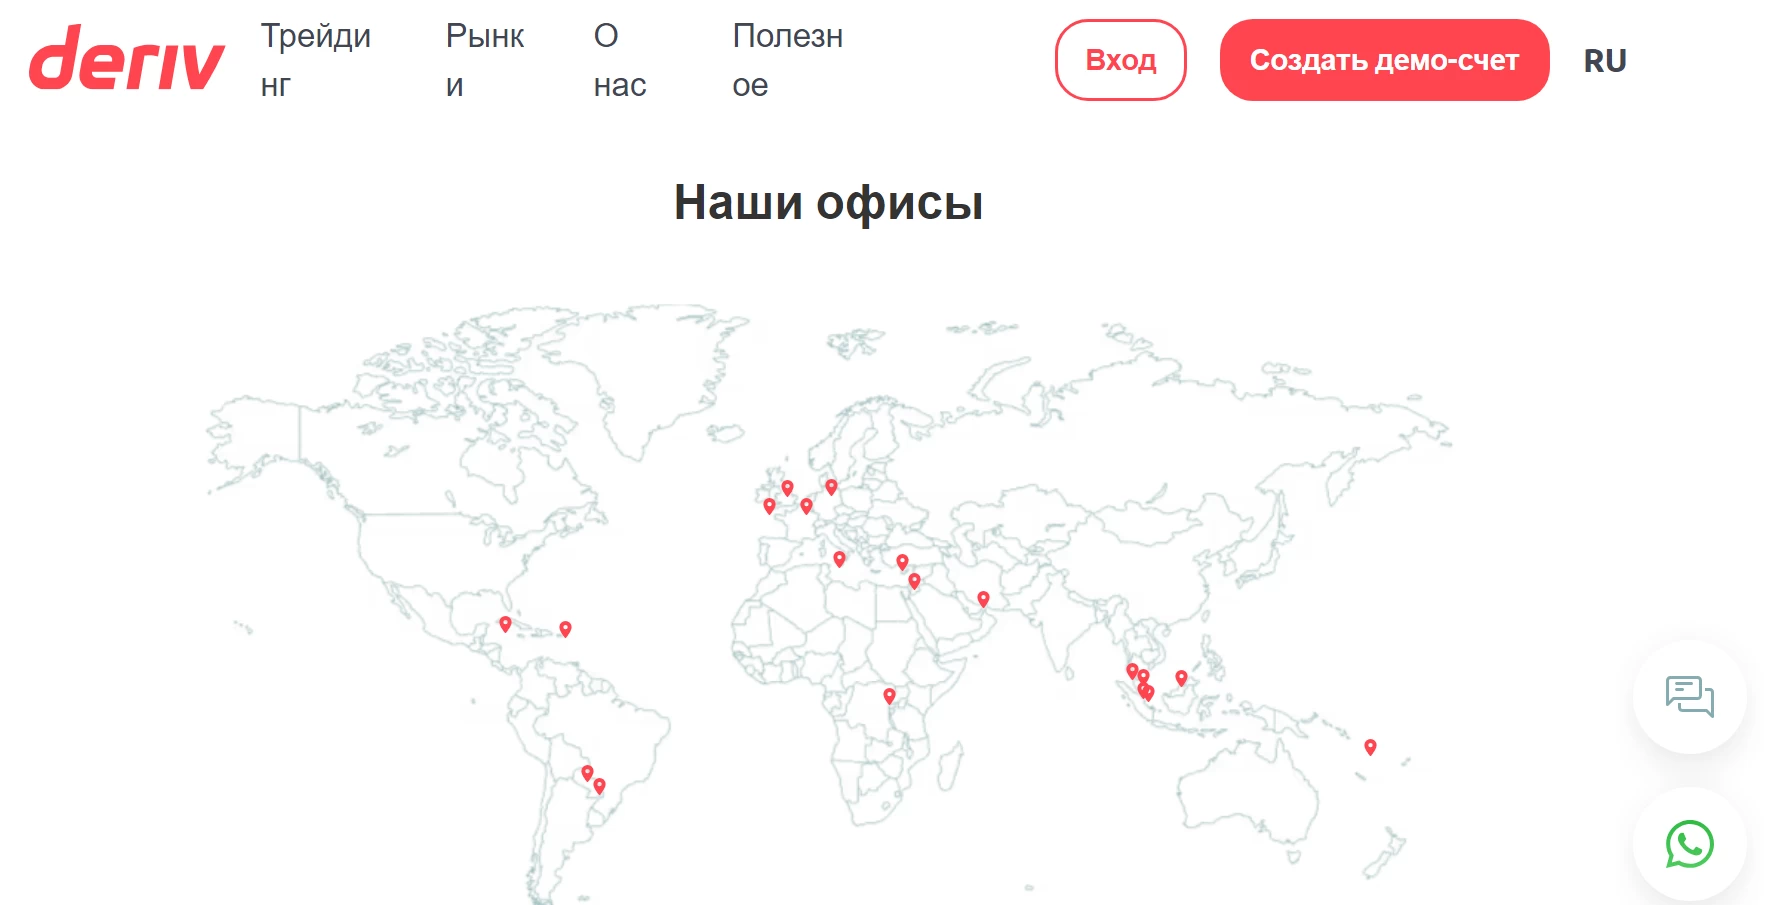 Deriv offices around the world